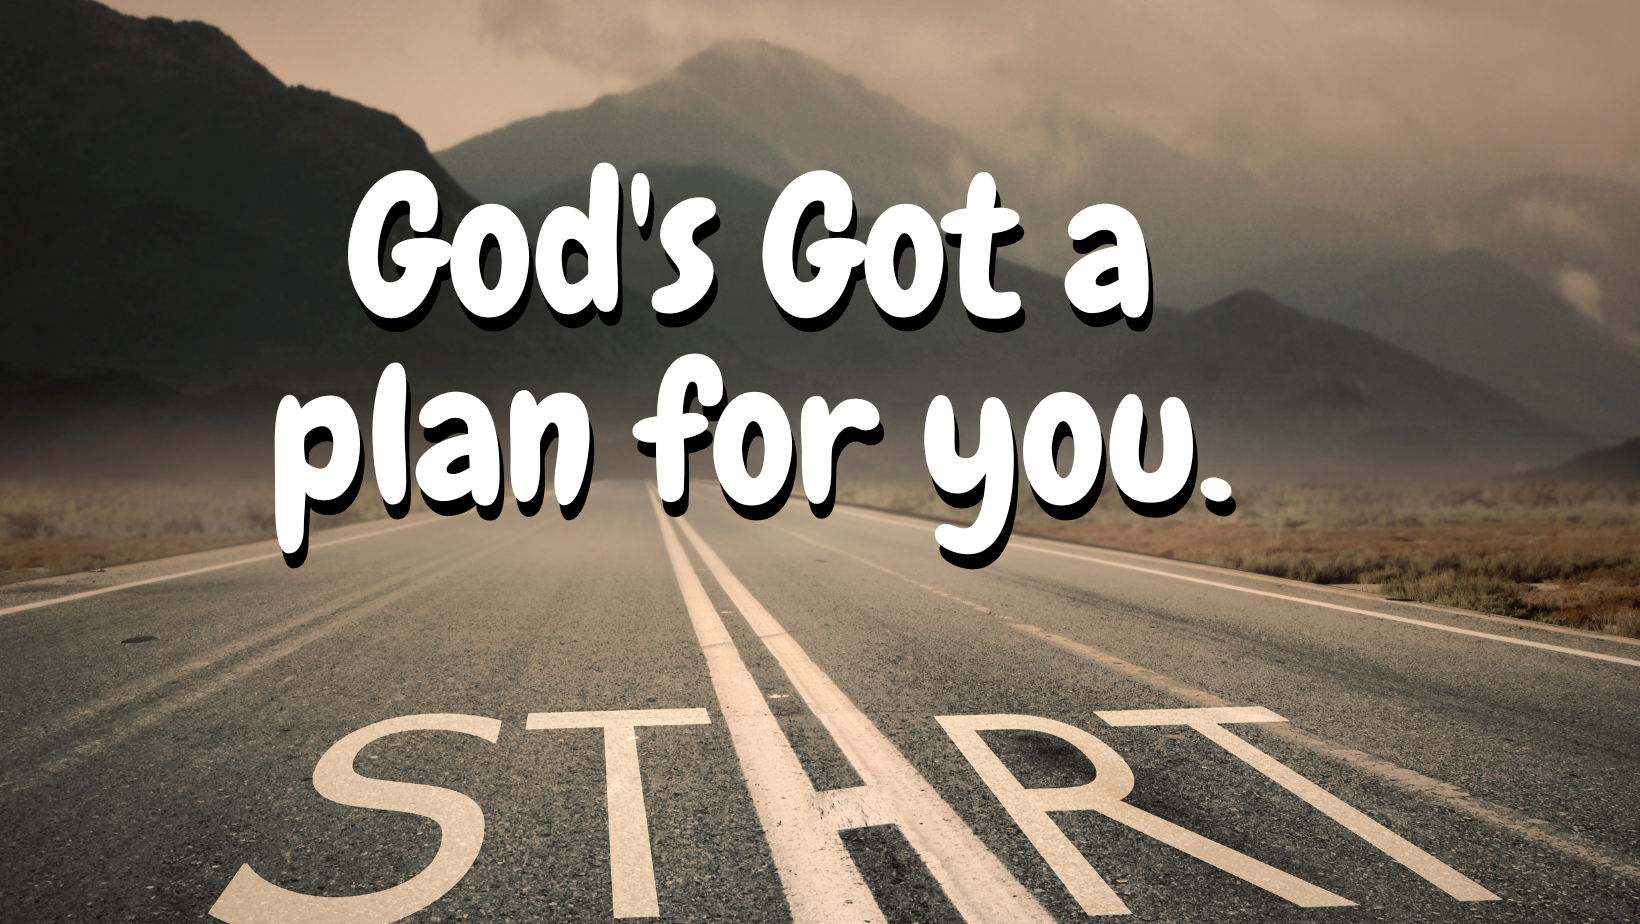 God’s got plans for you